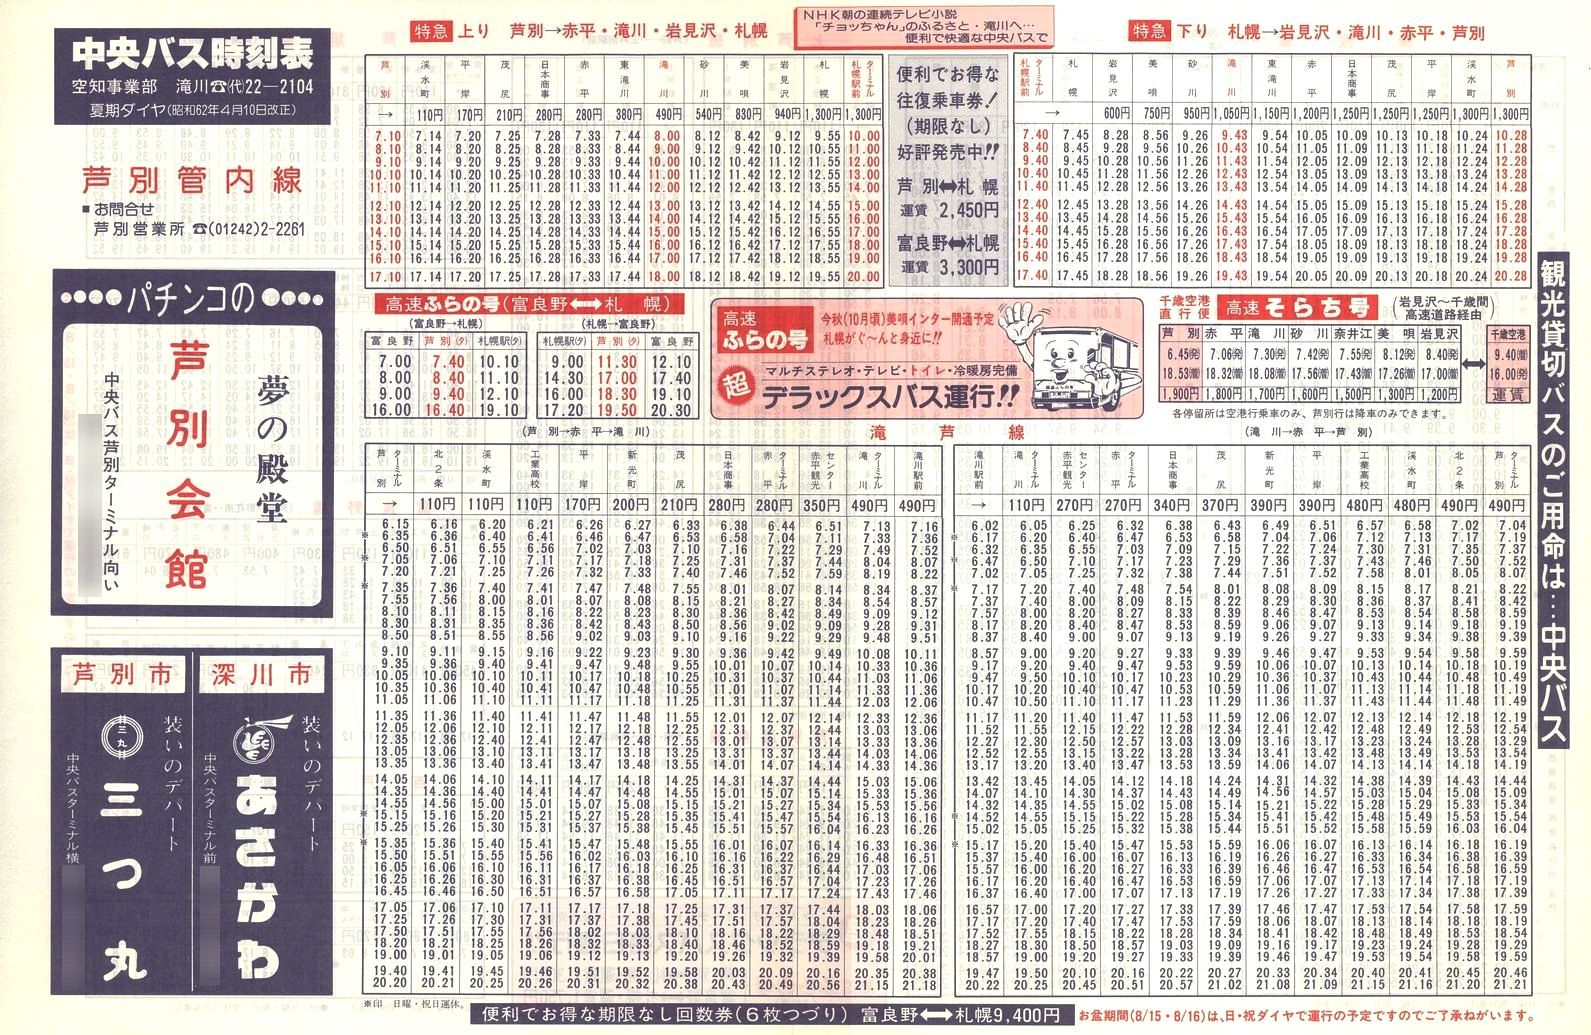 1987-04-10改正_北海道中央バス(空知)_芦別管内線時刻表表面